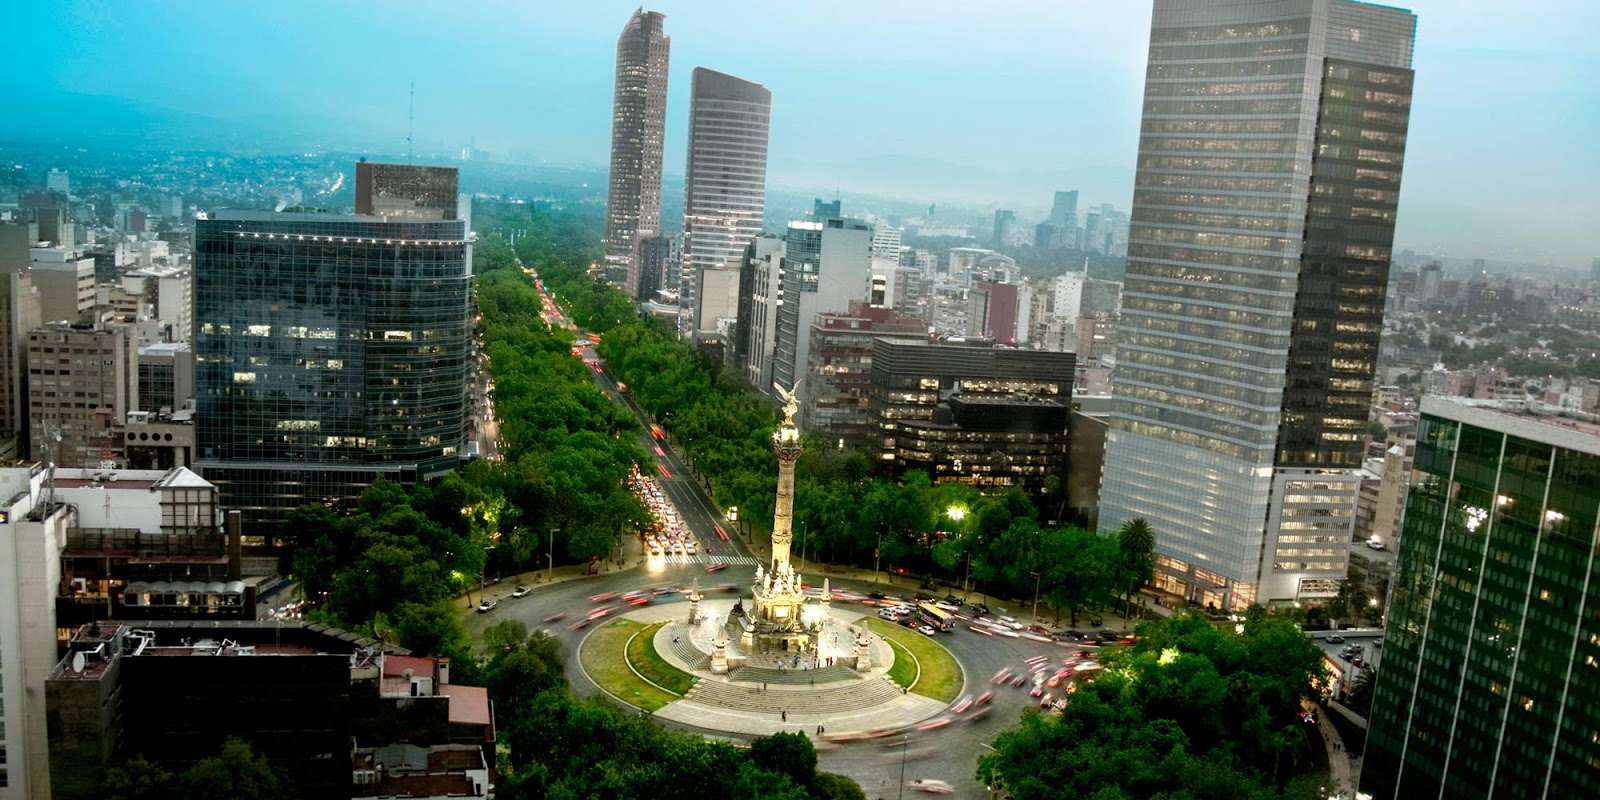 Annaniwa blog de amenidades: Acerca de la Ciudad de México